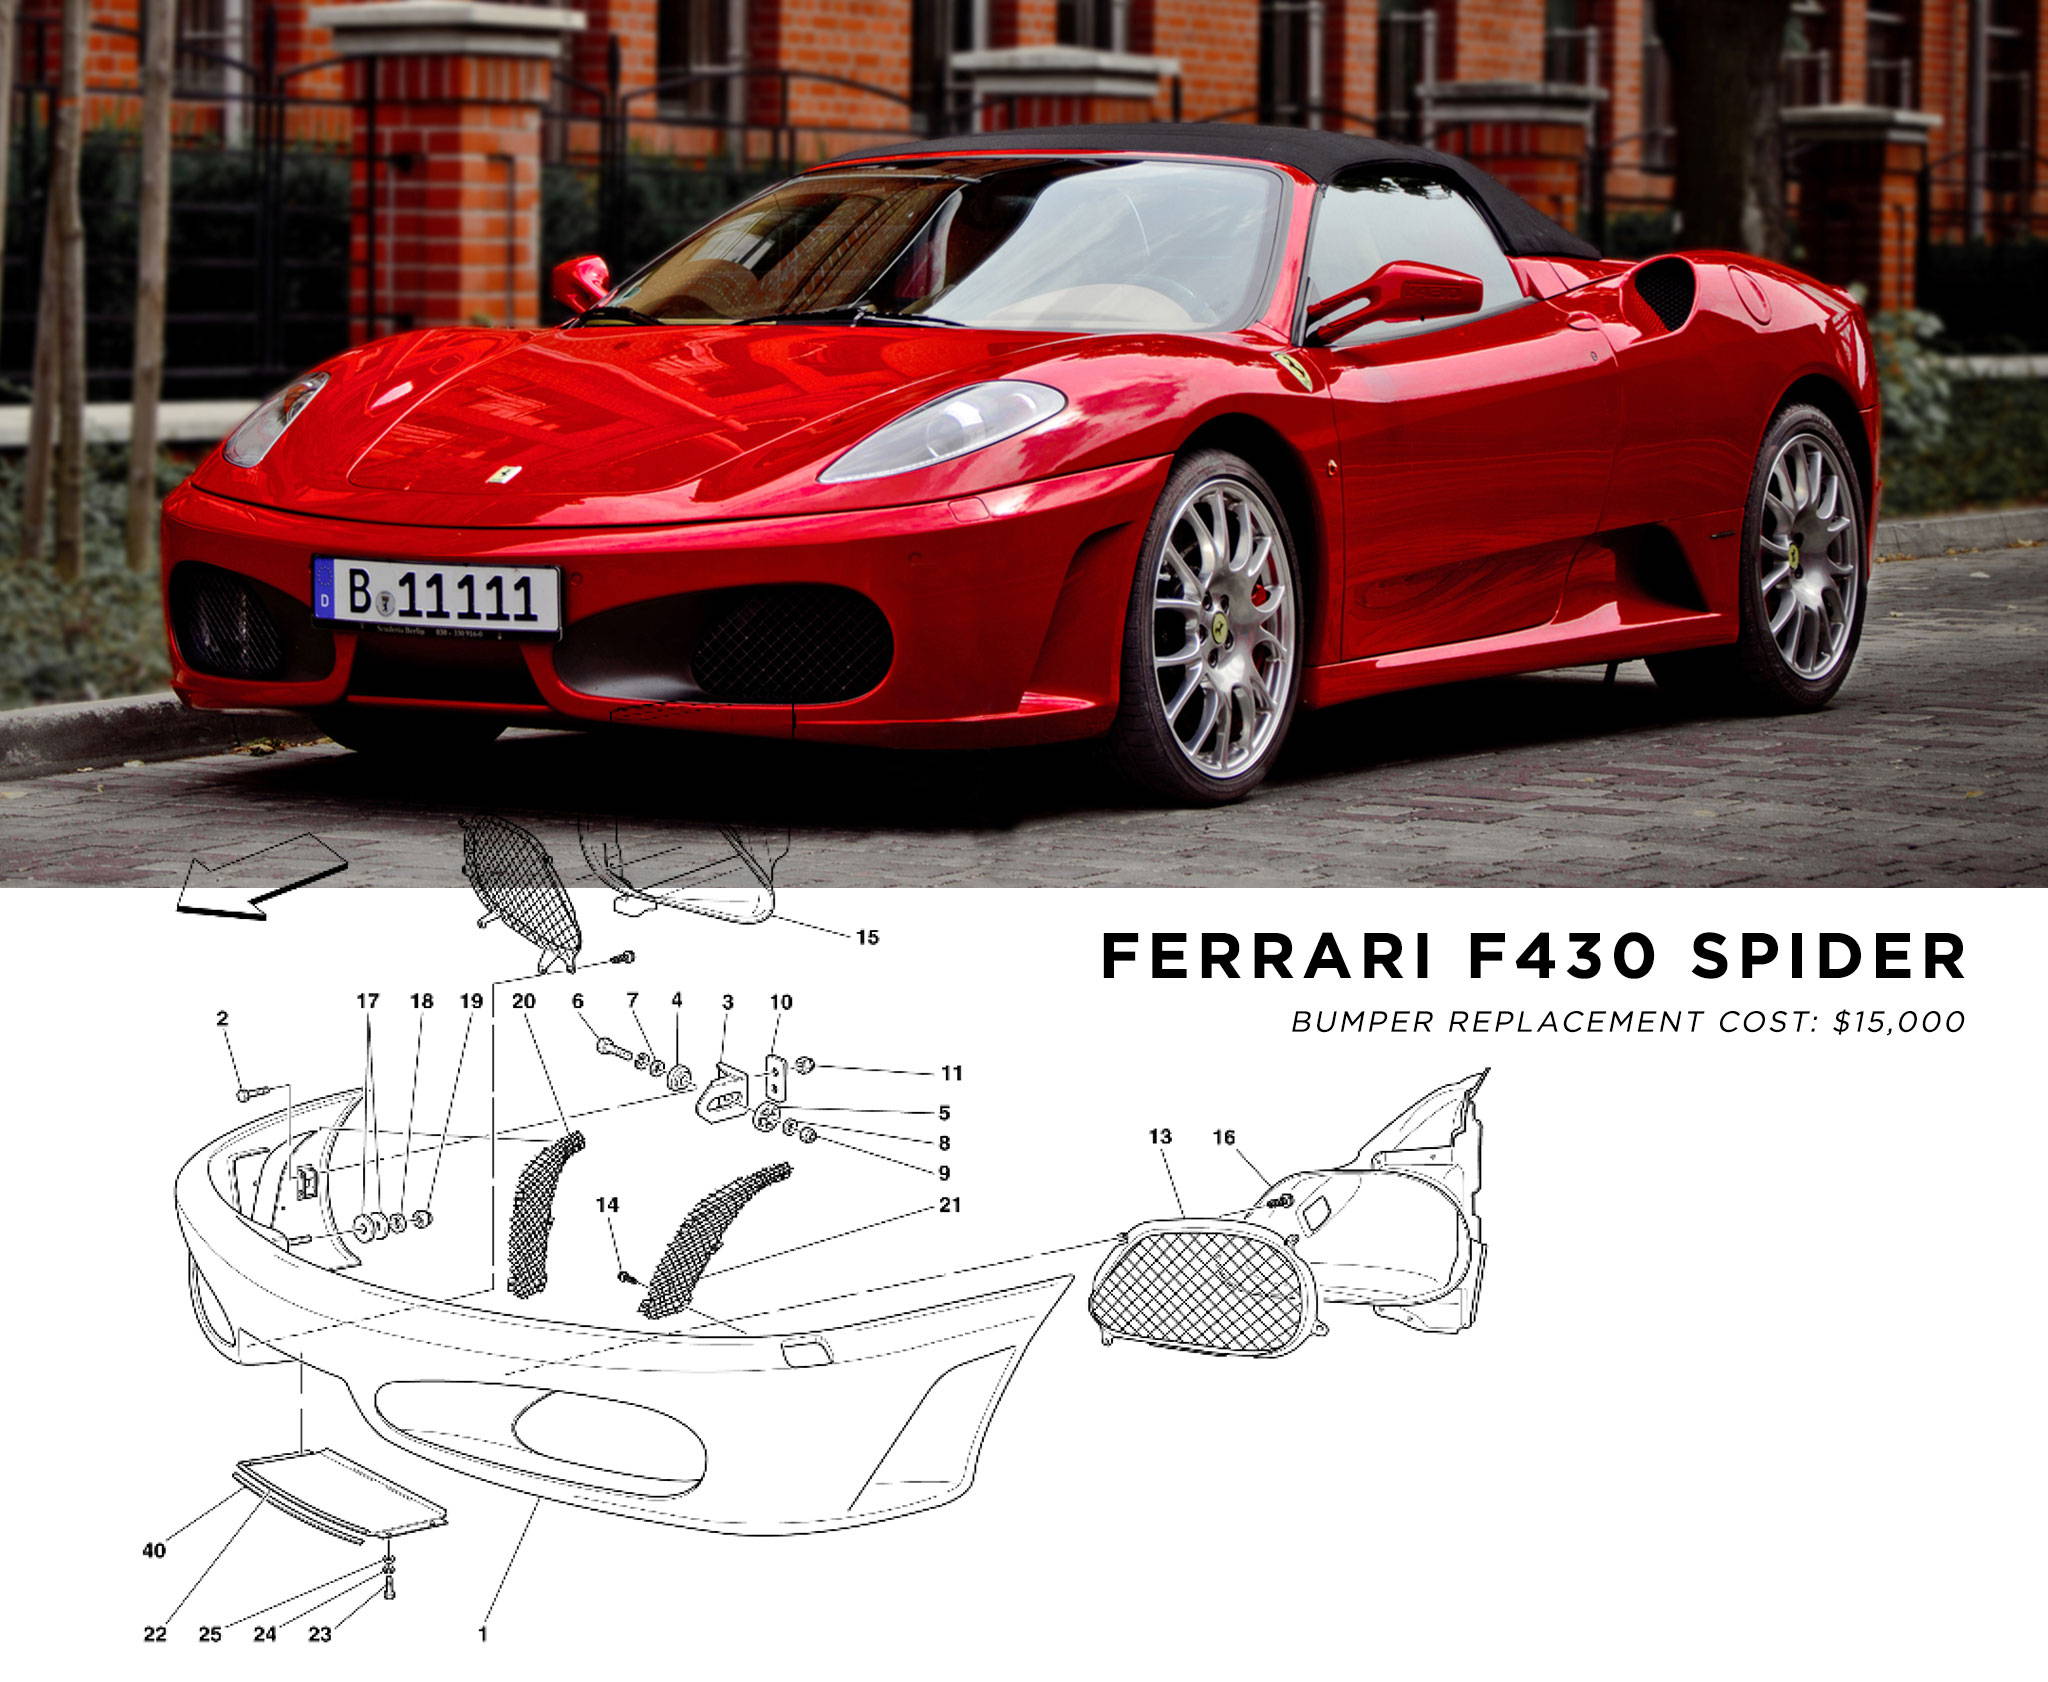 Ferrari F430 Bumper Replacement